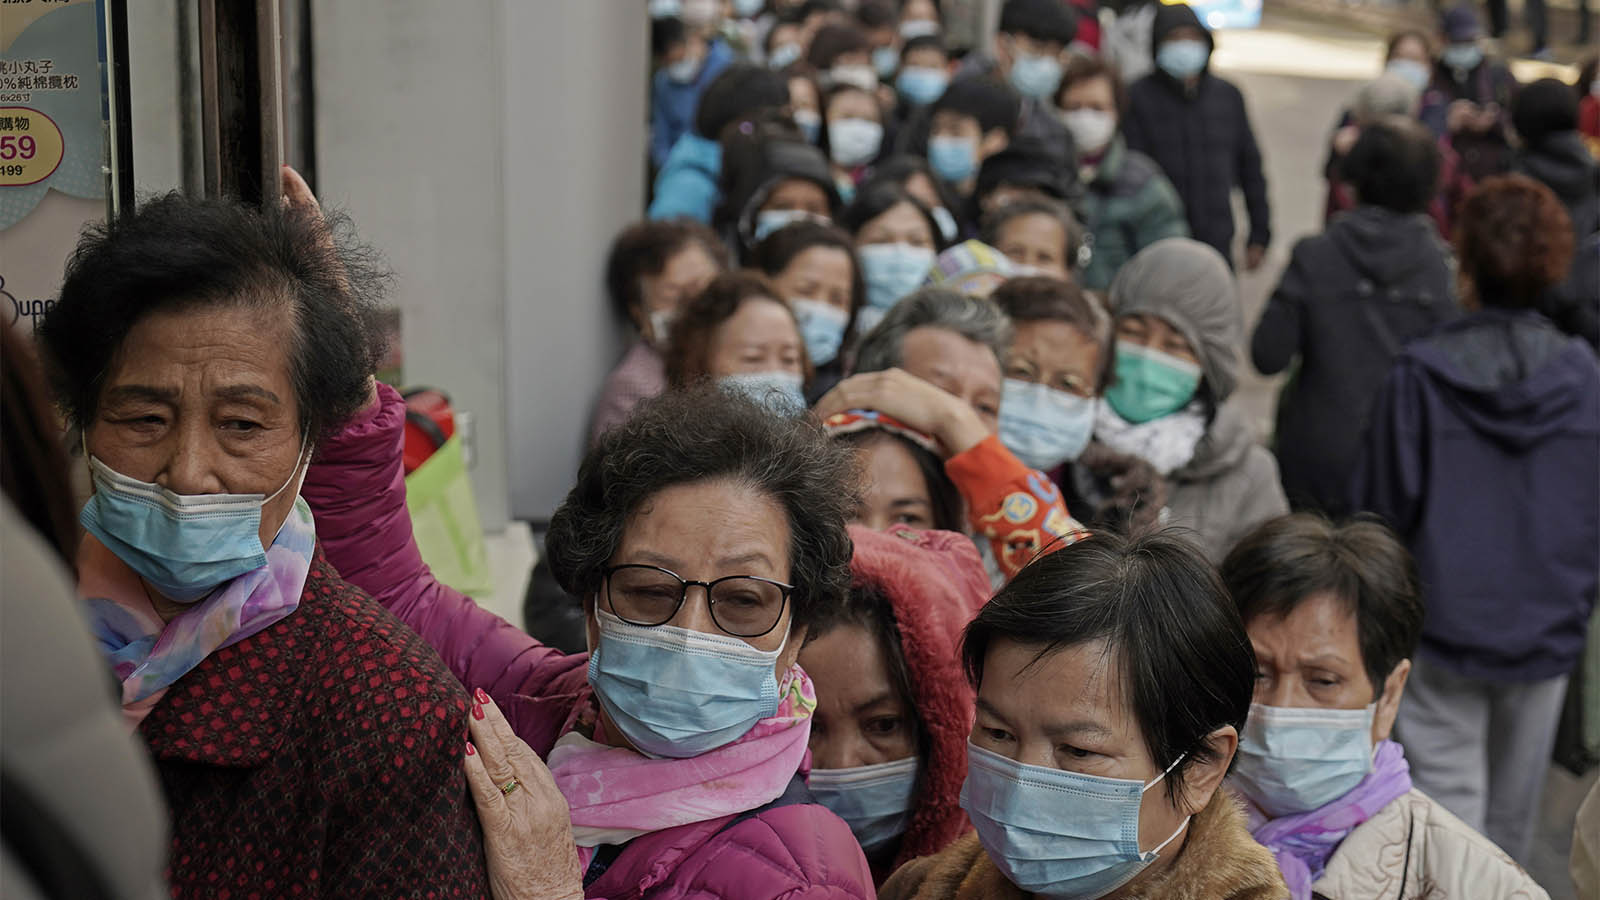 اشخاص في شوارع هونج كونج مع أقنعة وجه خوفًا من وباء الكورونا. 30 يناير 2020. "إن الطاعة هي سمة منخفضة جدًا للإسرائيليين وهي قوية جدًا في الشرق". (AP Photo/Kin Cheung)